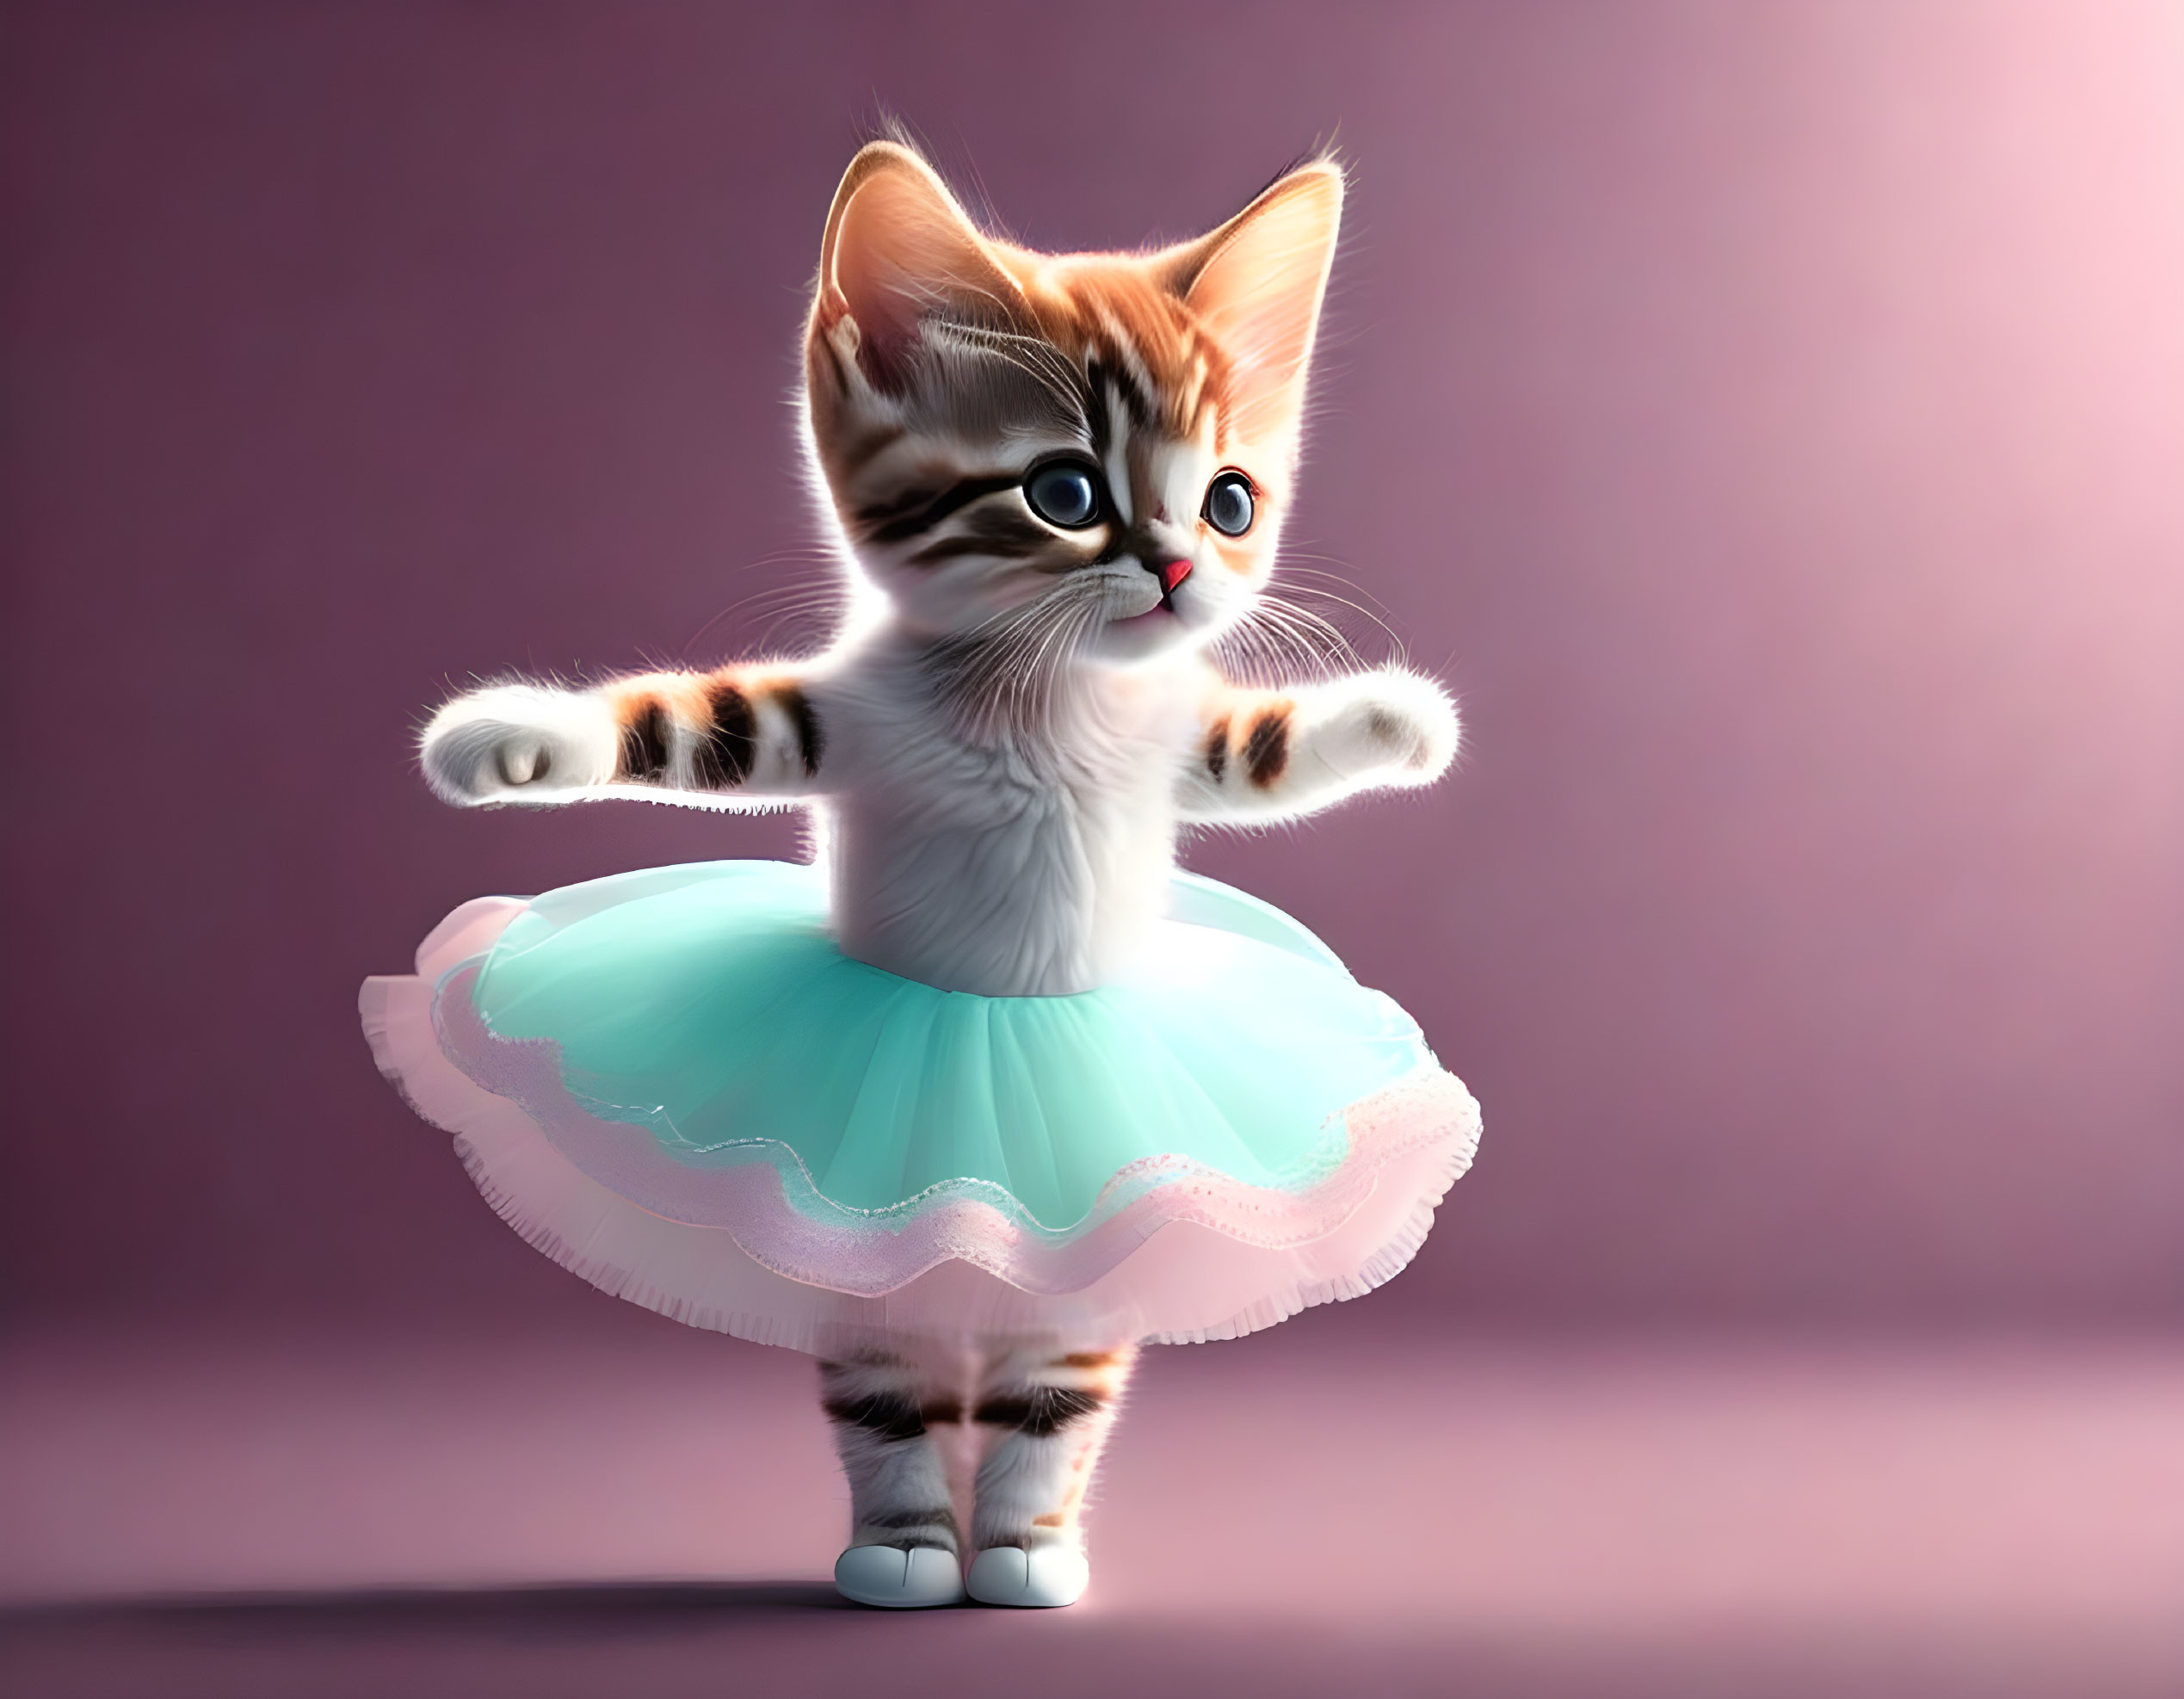 Anthropomorphic kitten in blue tutu poised for ballet dance